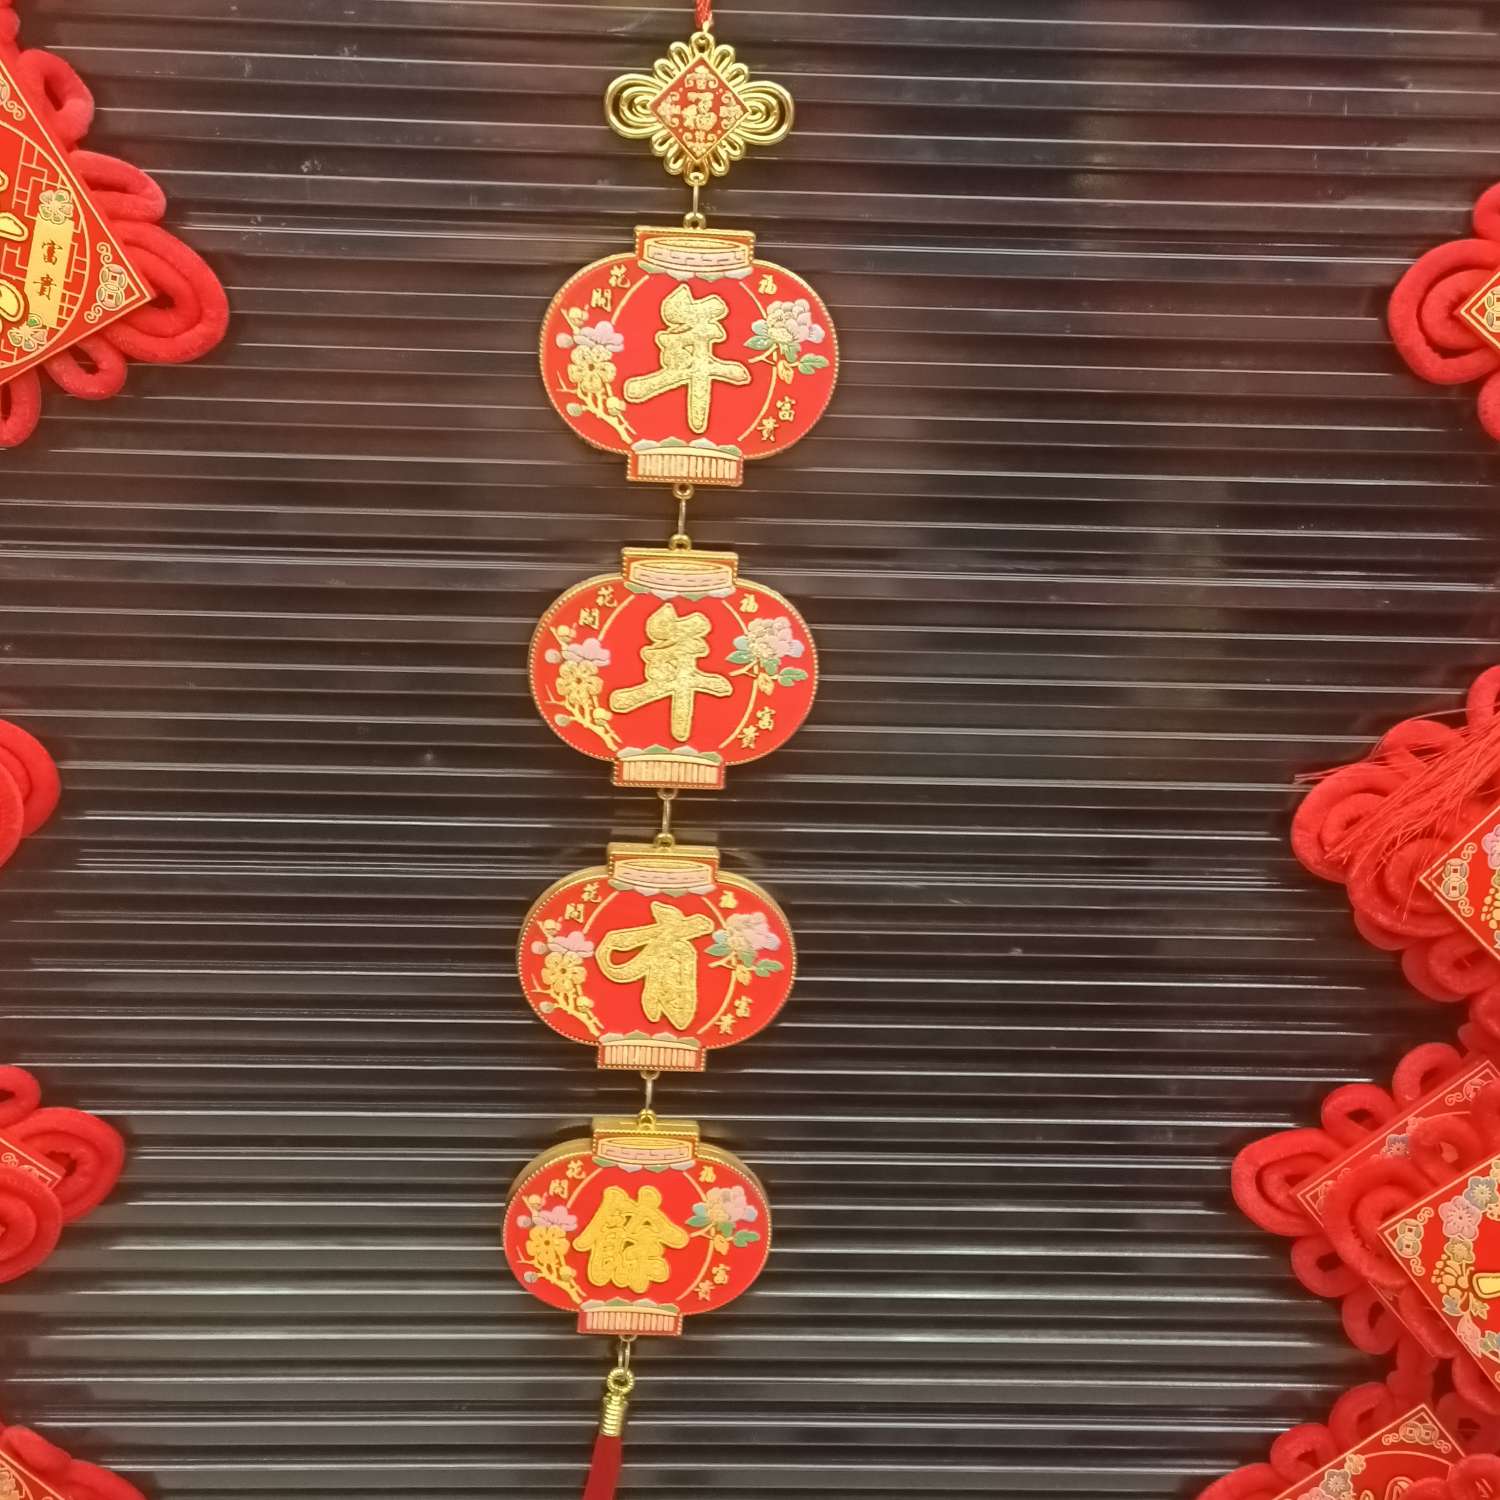 中国结挂件灯笼对联吉祥如意年年有余玄关家居装饰平安节